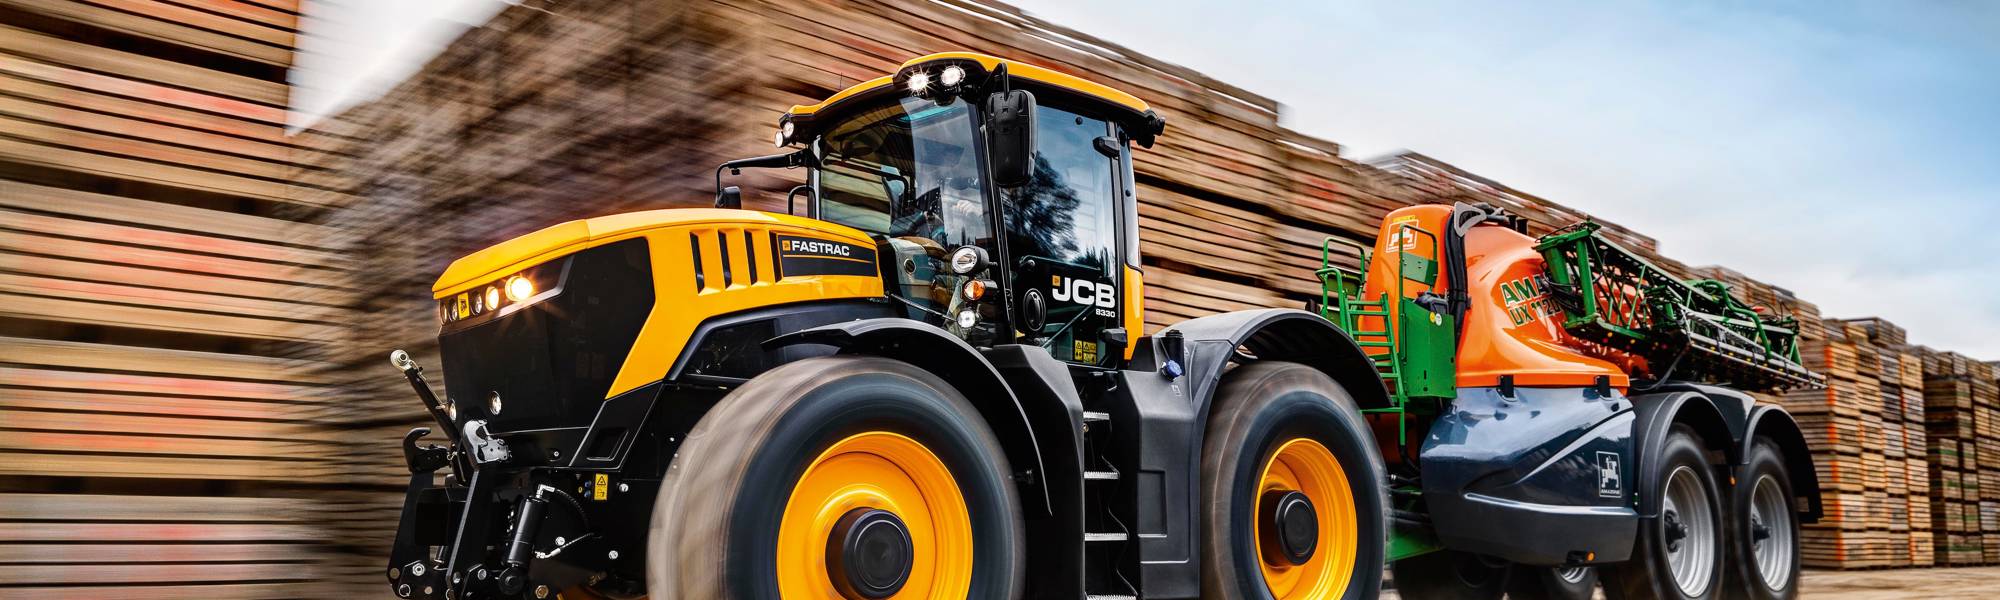 JCB Fastrac 8330 Agricultural Tractors - Scot JCB